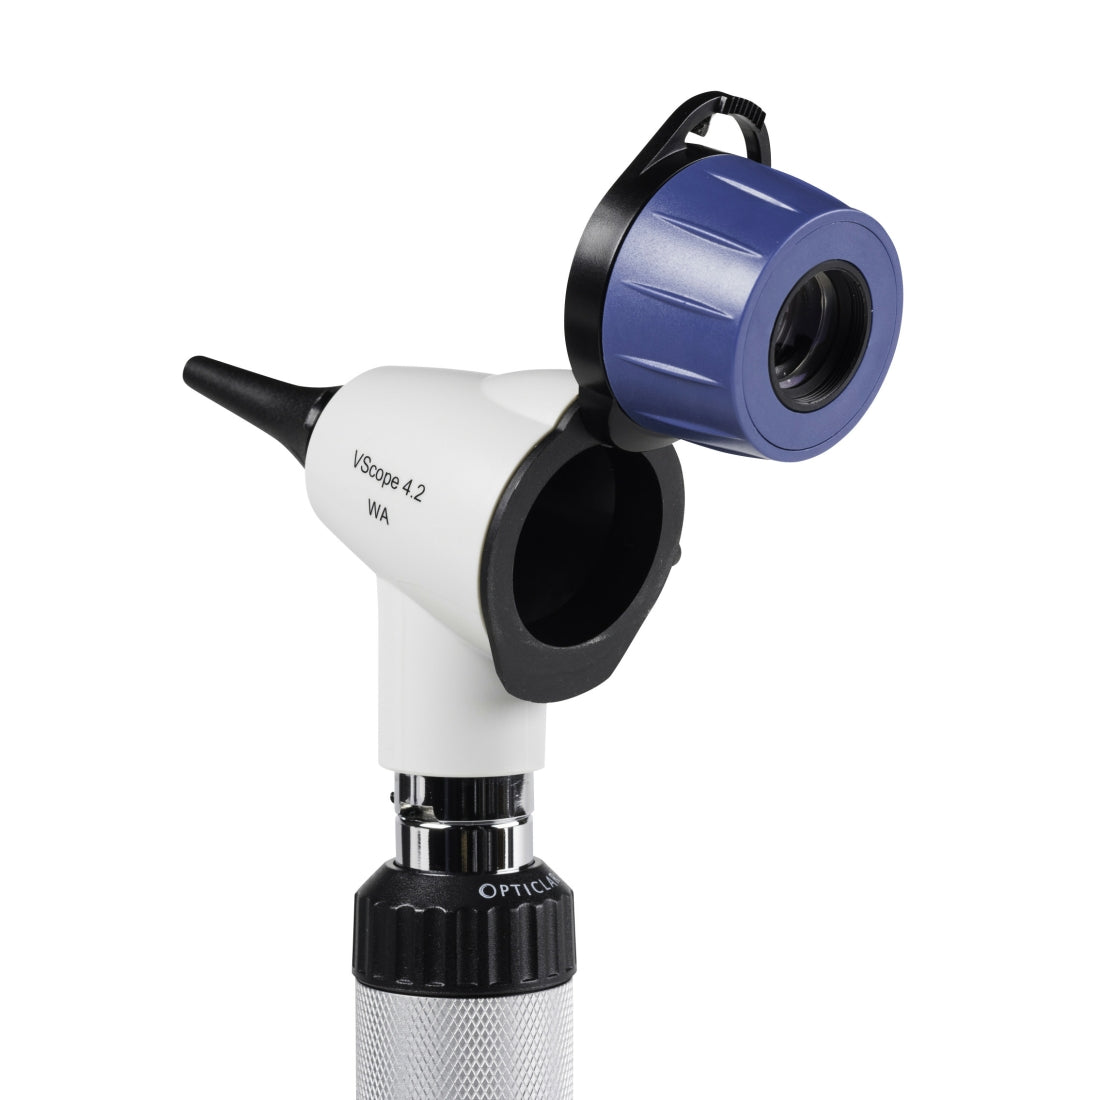 Opticlar - VScope 4.2x Diagnostic Set - E-Lithium Rechargeable, 2 Handles